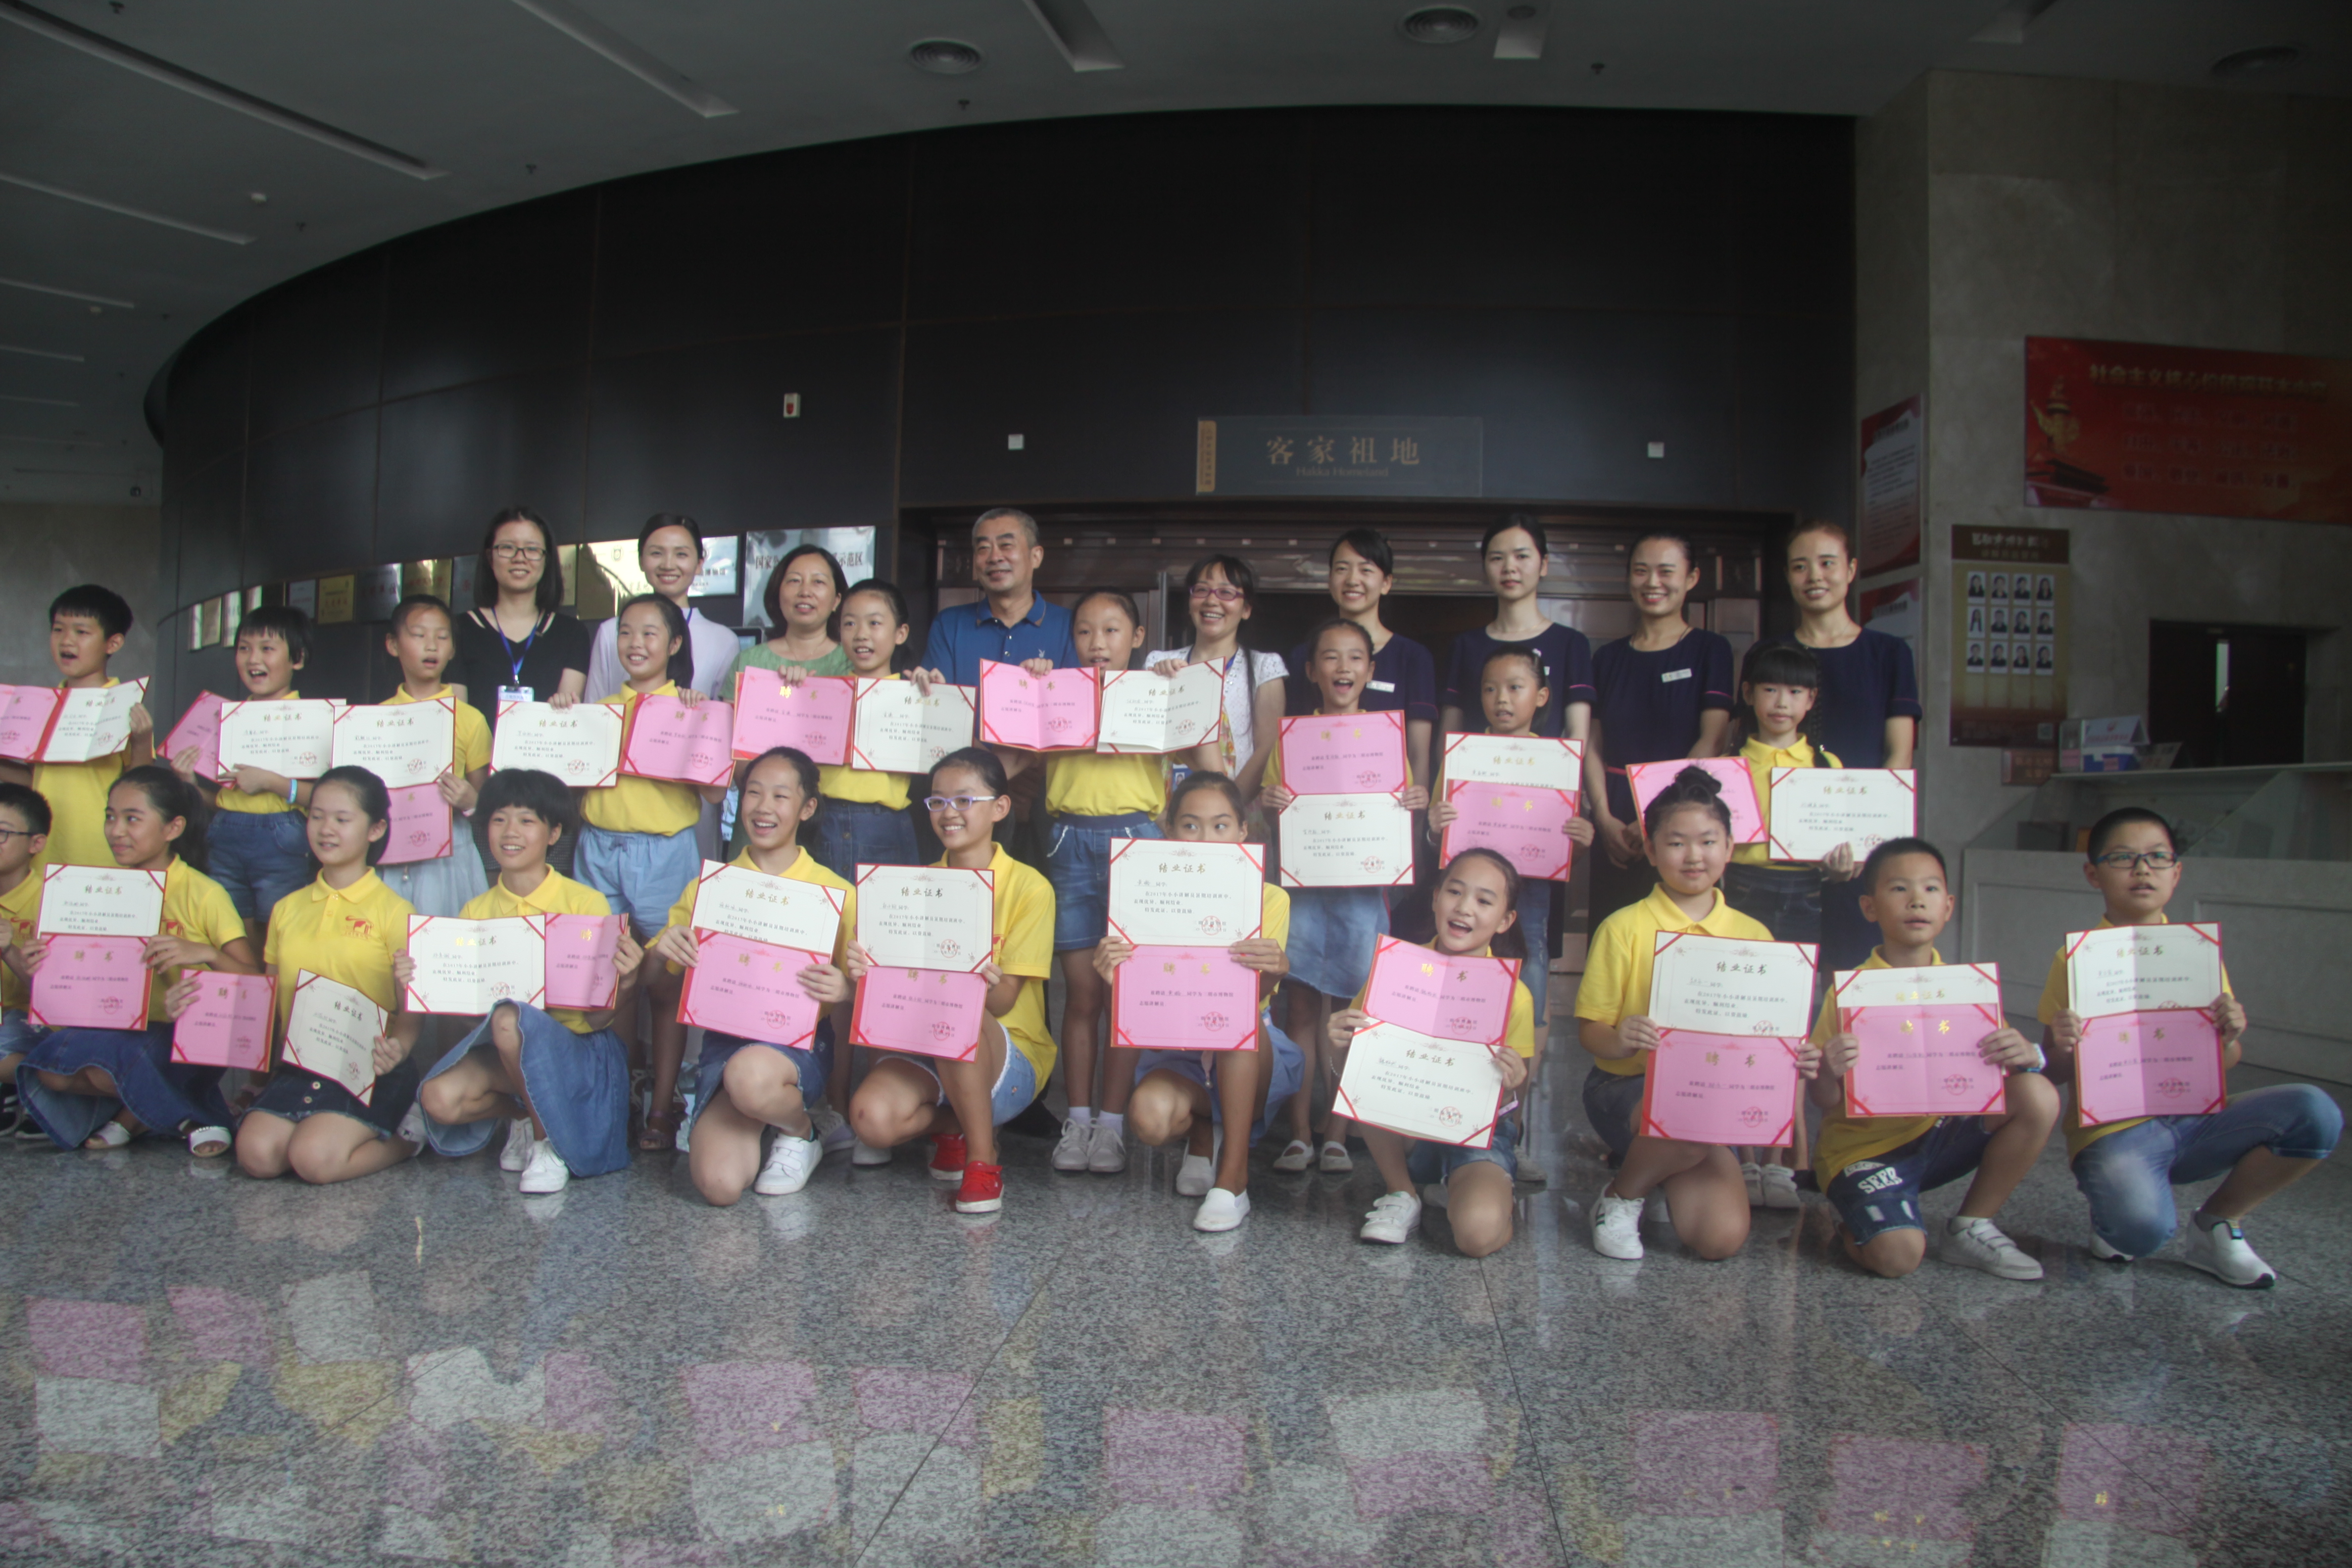 三明市博物馆2017年小小讲解员暑期培训班顺利结业